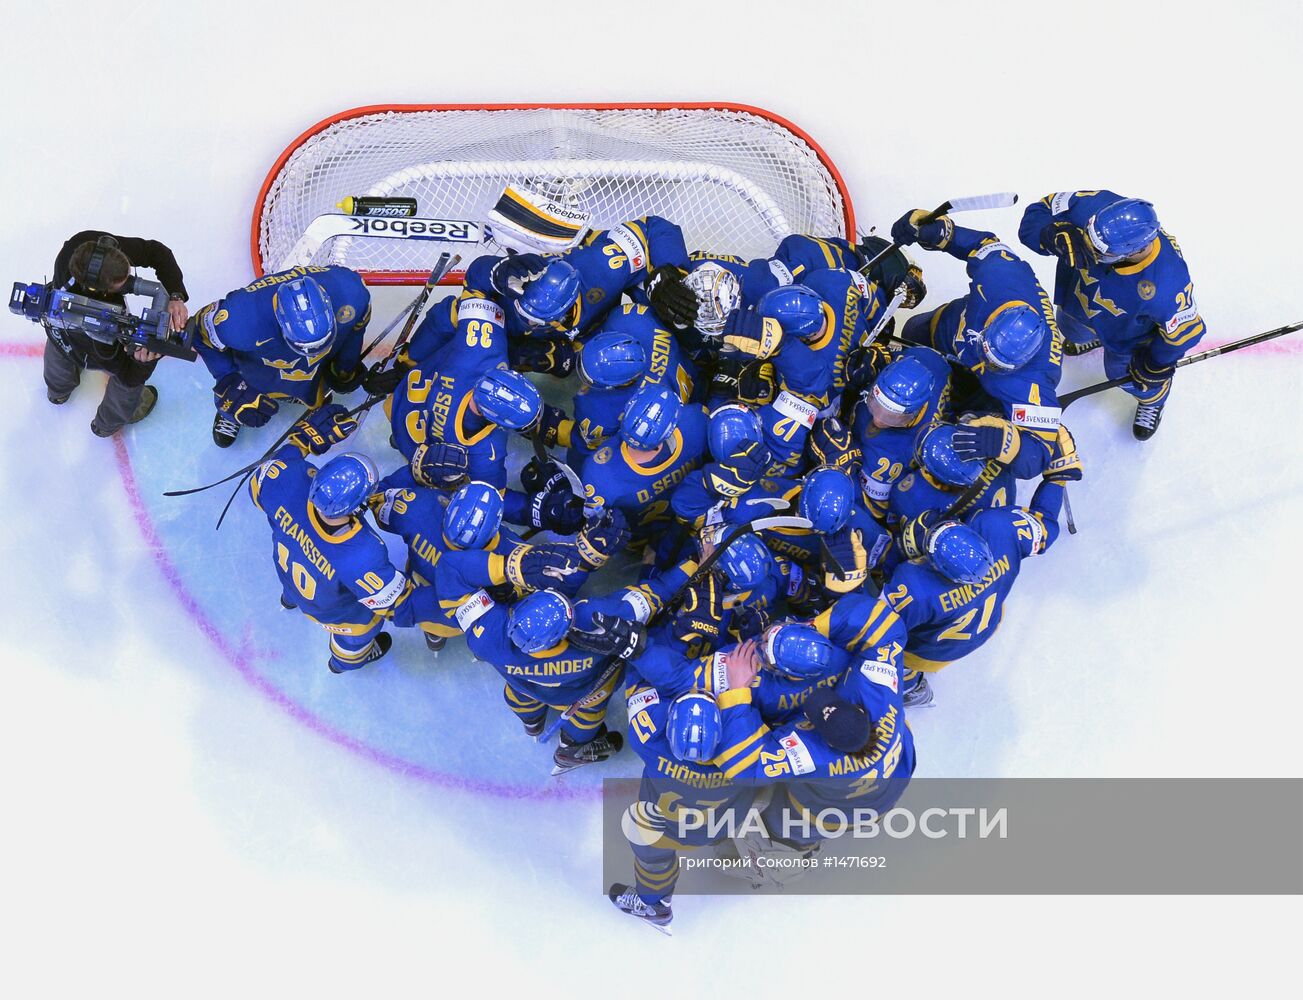 Хоккей. Чемпионат мира. Матч Финляндия - Швеция